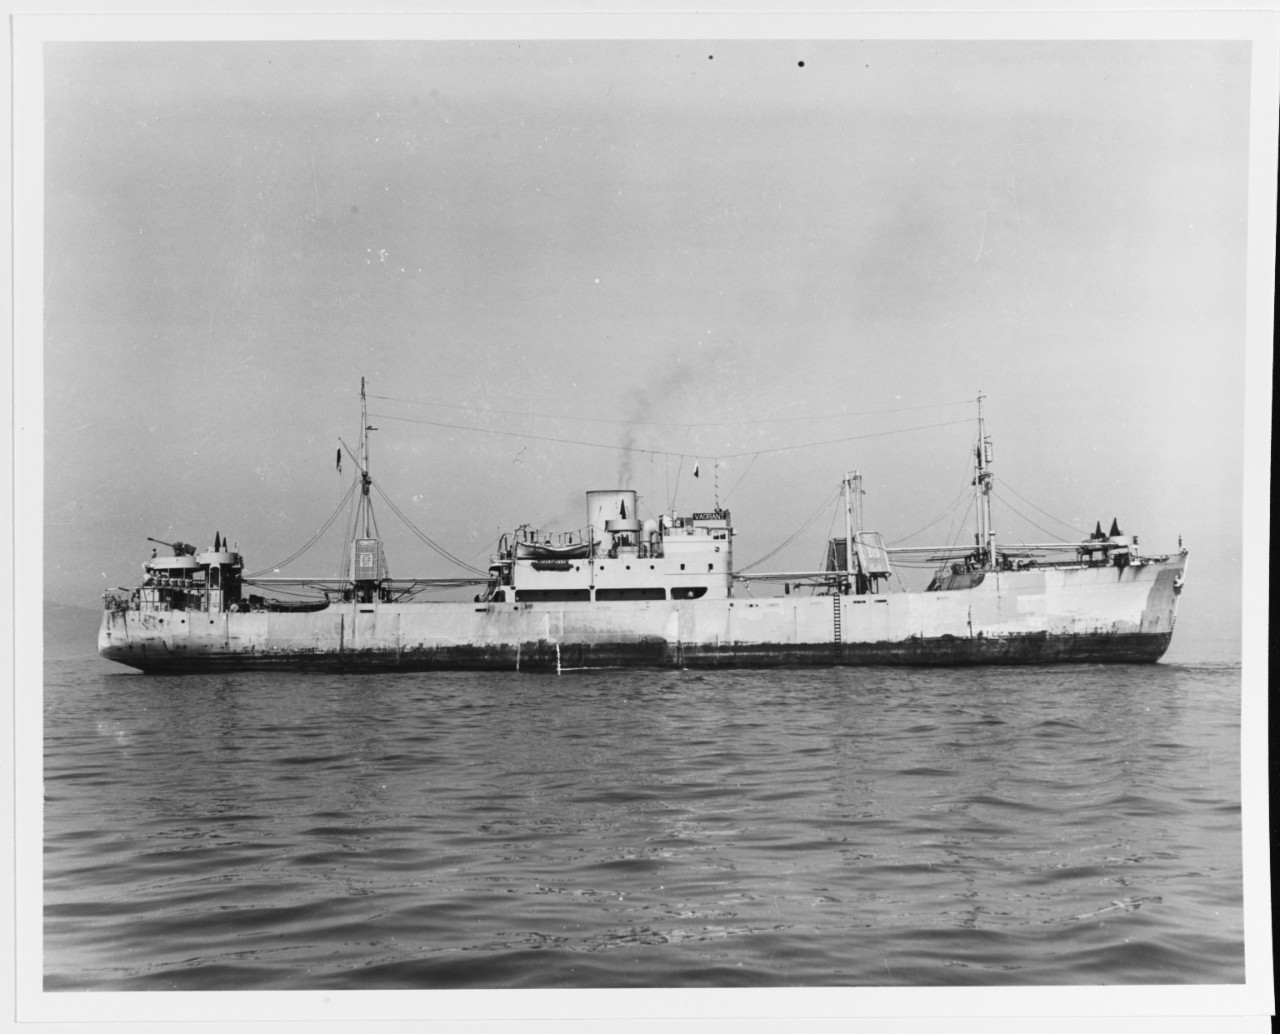 S.S. VAGRANT (Panamanian Cargo Ship, 1938-1968)